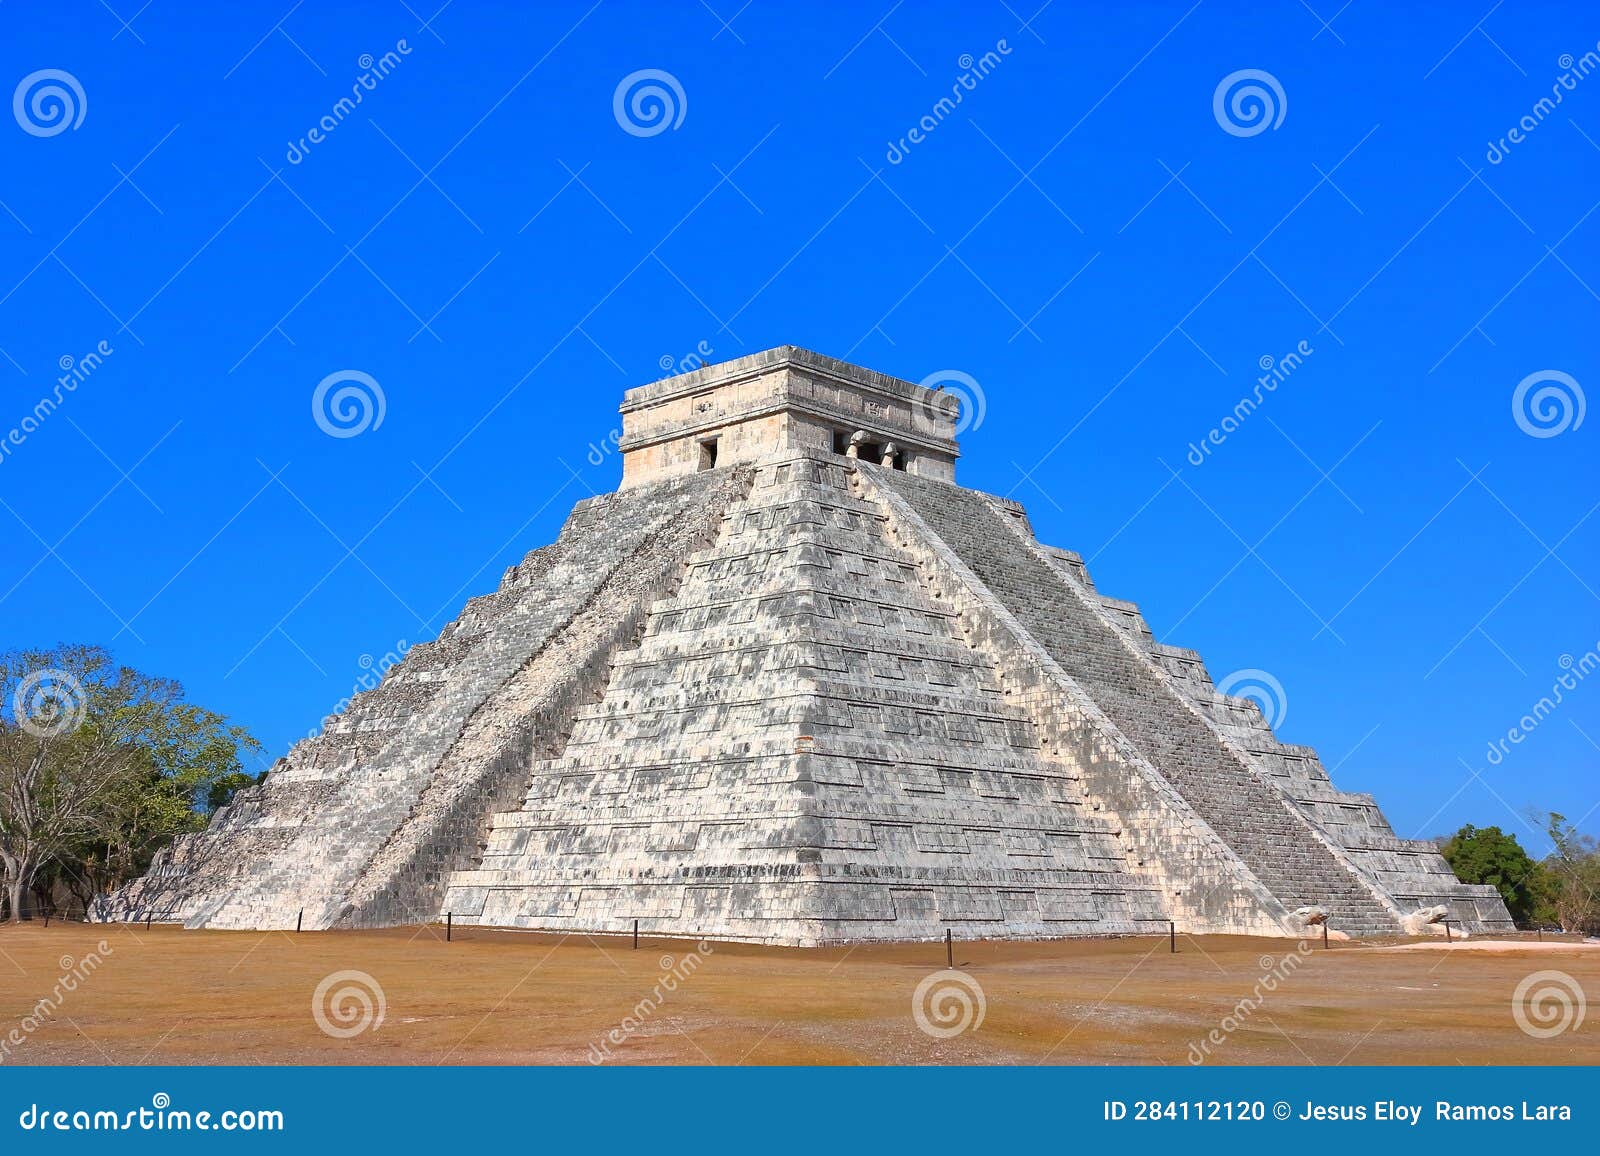 kukulcan temple in chichenitza, yucatan, mexico iv